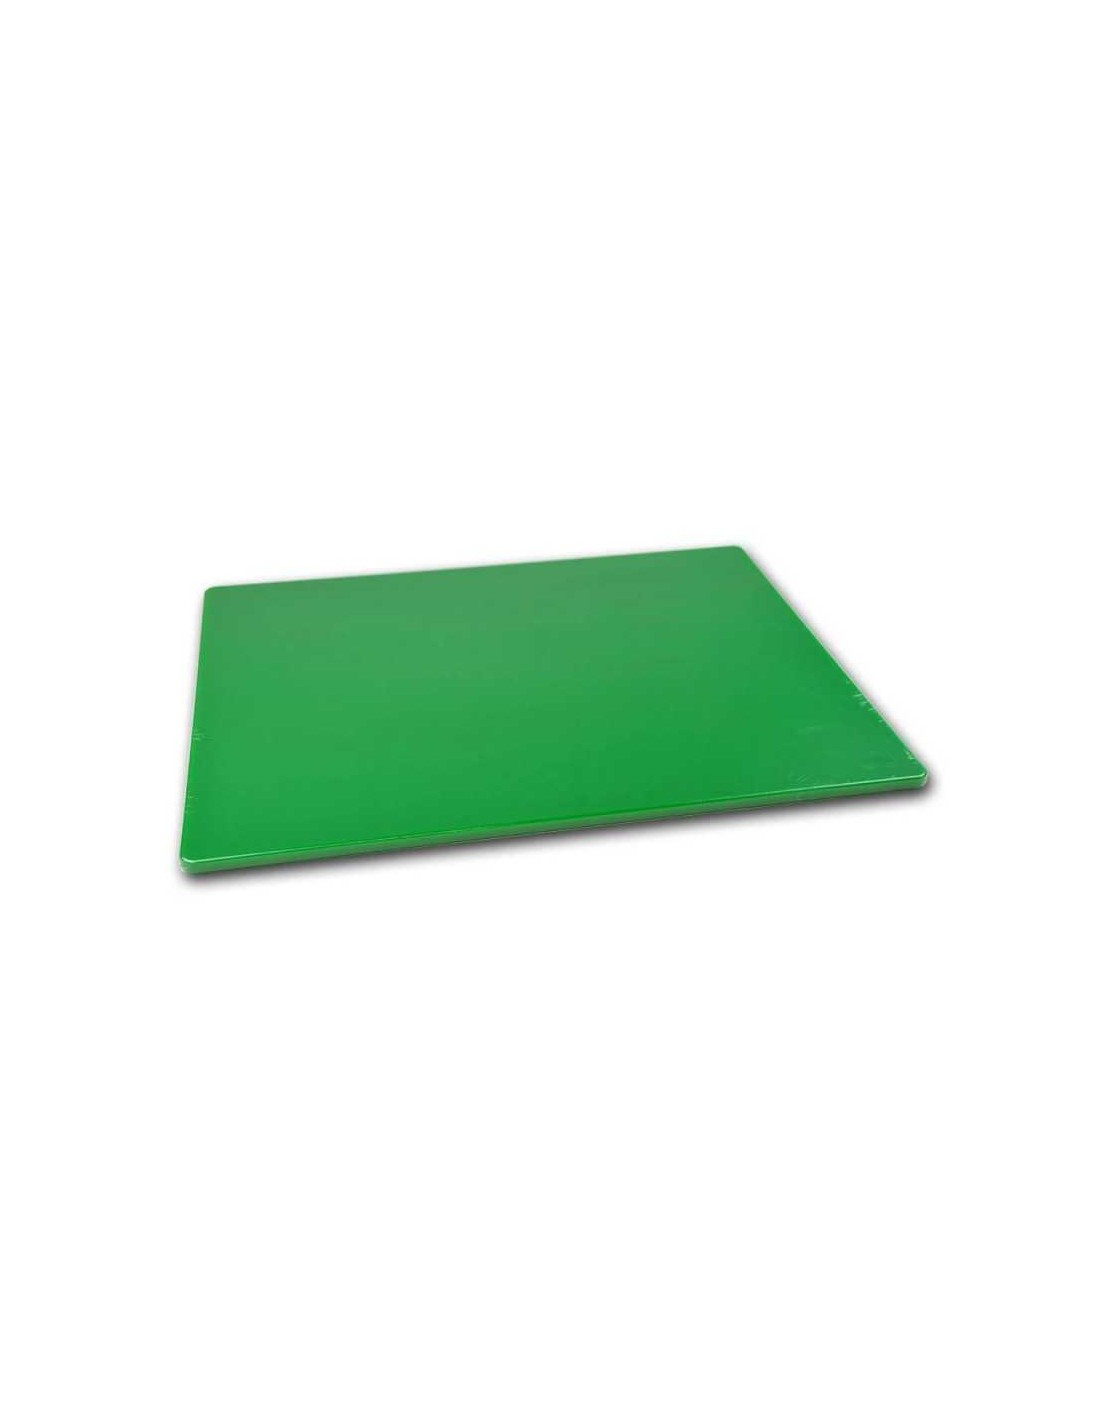 Tabla Para Picar 38 cm Verde – ProEpta